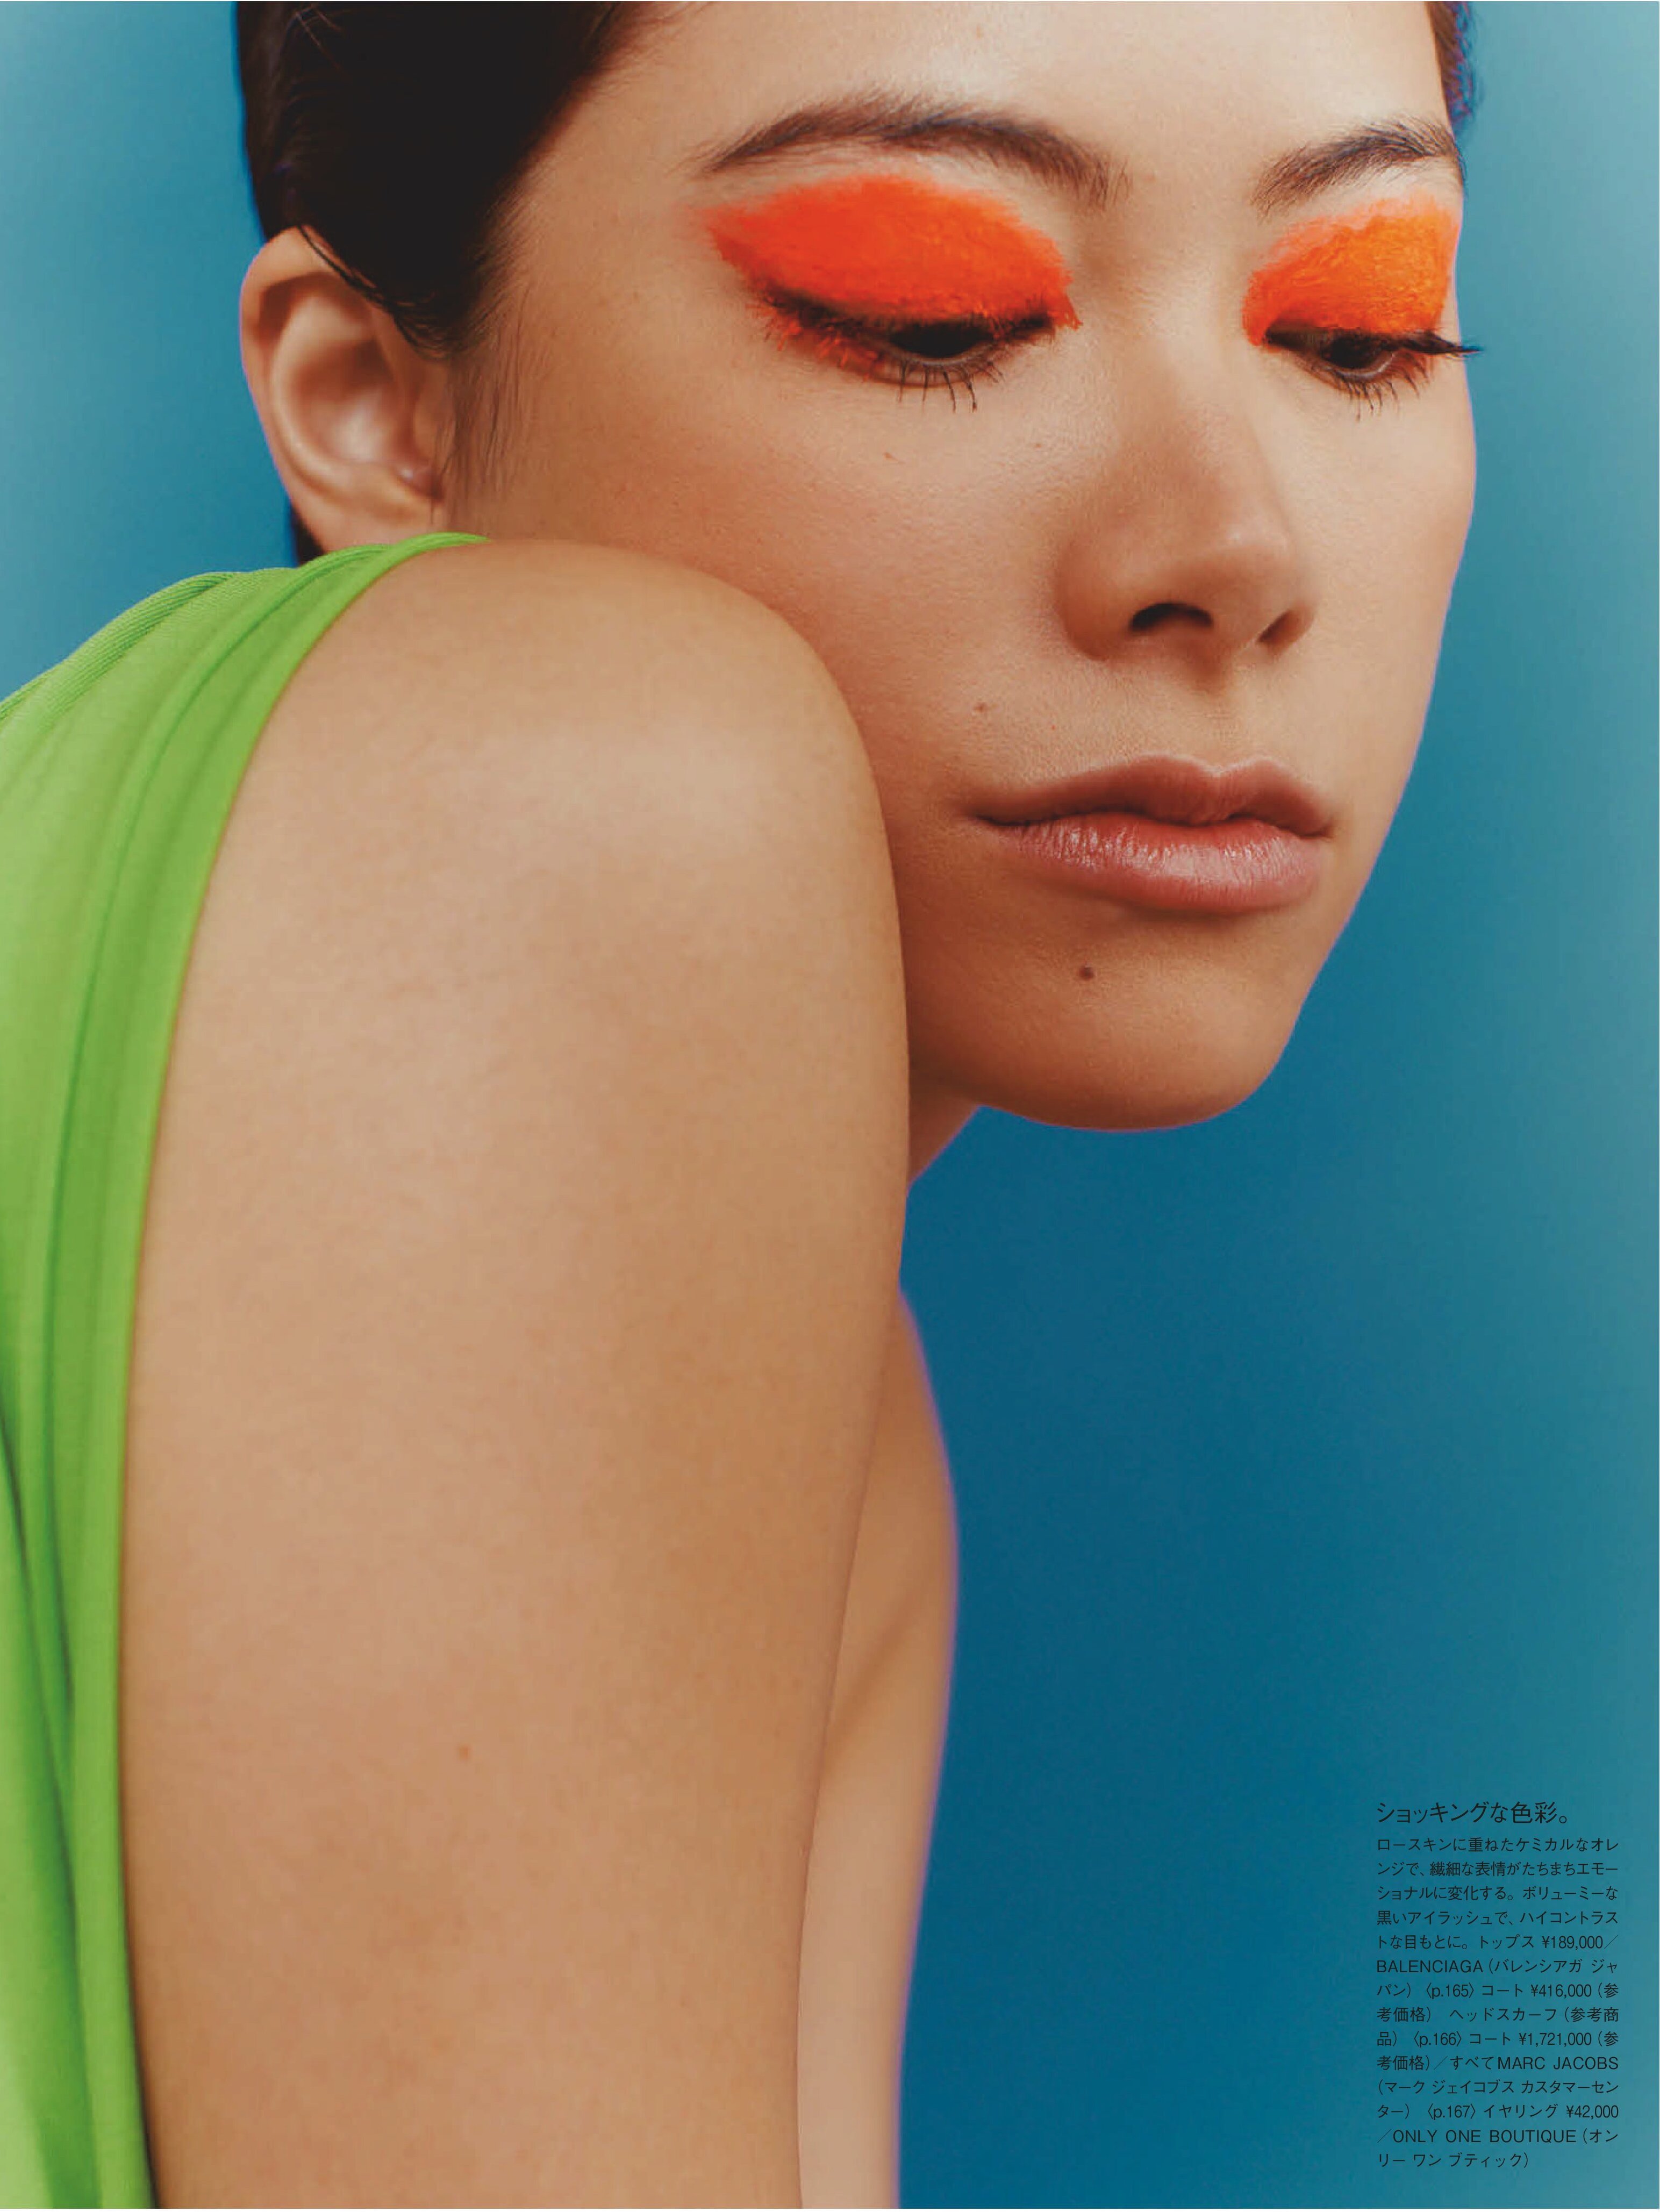 Hikari Mori for Vogue Japan July 2019 - neon makeup -orange eyeshadow